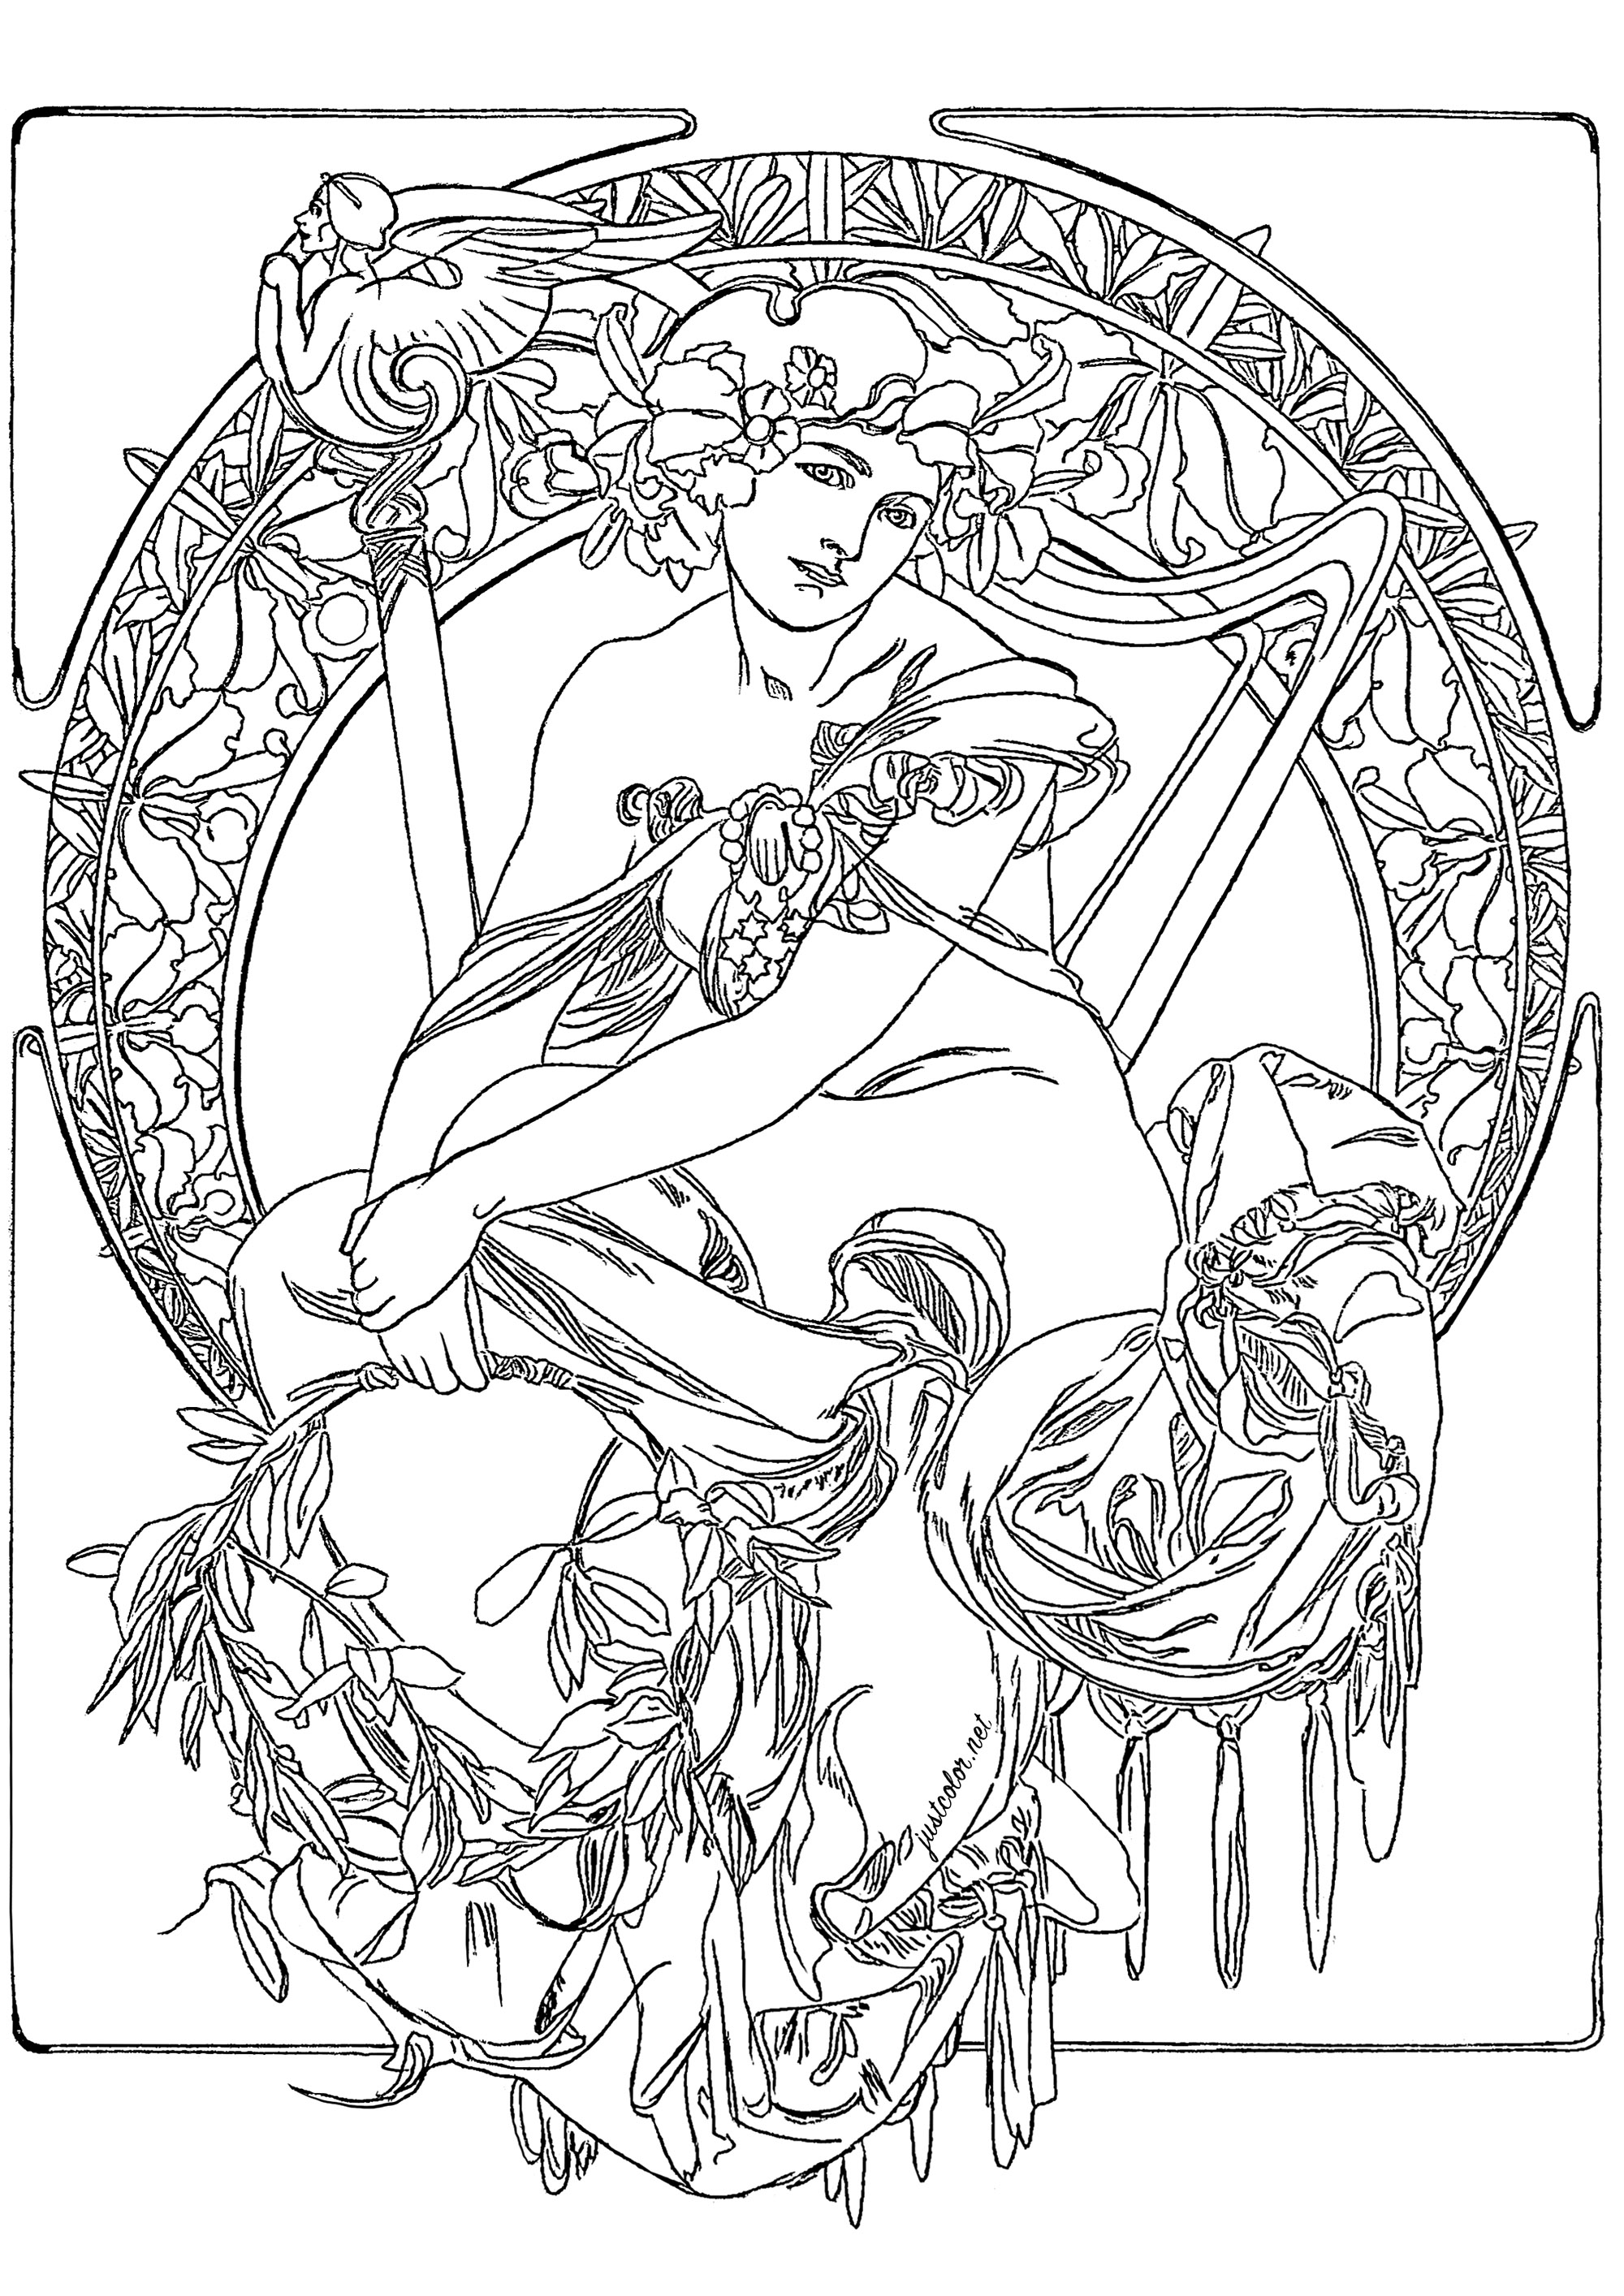 Alfons Mucha - Studie für ein Werbeplakat (1900). Die Komposition basiert auf einem zentralen Kreis, der von einer Reihe von floralen und geometrischen Motiven umgeben ist. Der zentrale Kreis zeigt eine weibliche Figur, deren Kleidung mit floralen Motiven und einem Kranz aus Blättern und Blumen geschmückt ist. Obwohl es sich um eine Skizze handelt, sind die Details sehr präzise und spiegeln Muchas Finesse und Liebe zum Detail wider (die Originalzeichnung wurde leicht überarbeitet, um eine Kolorierung zu ermöglichen).